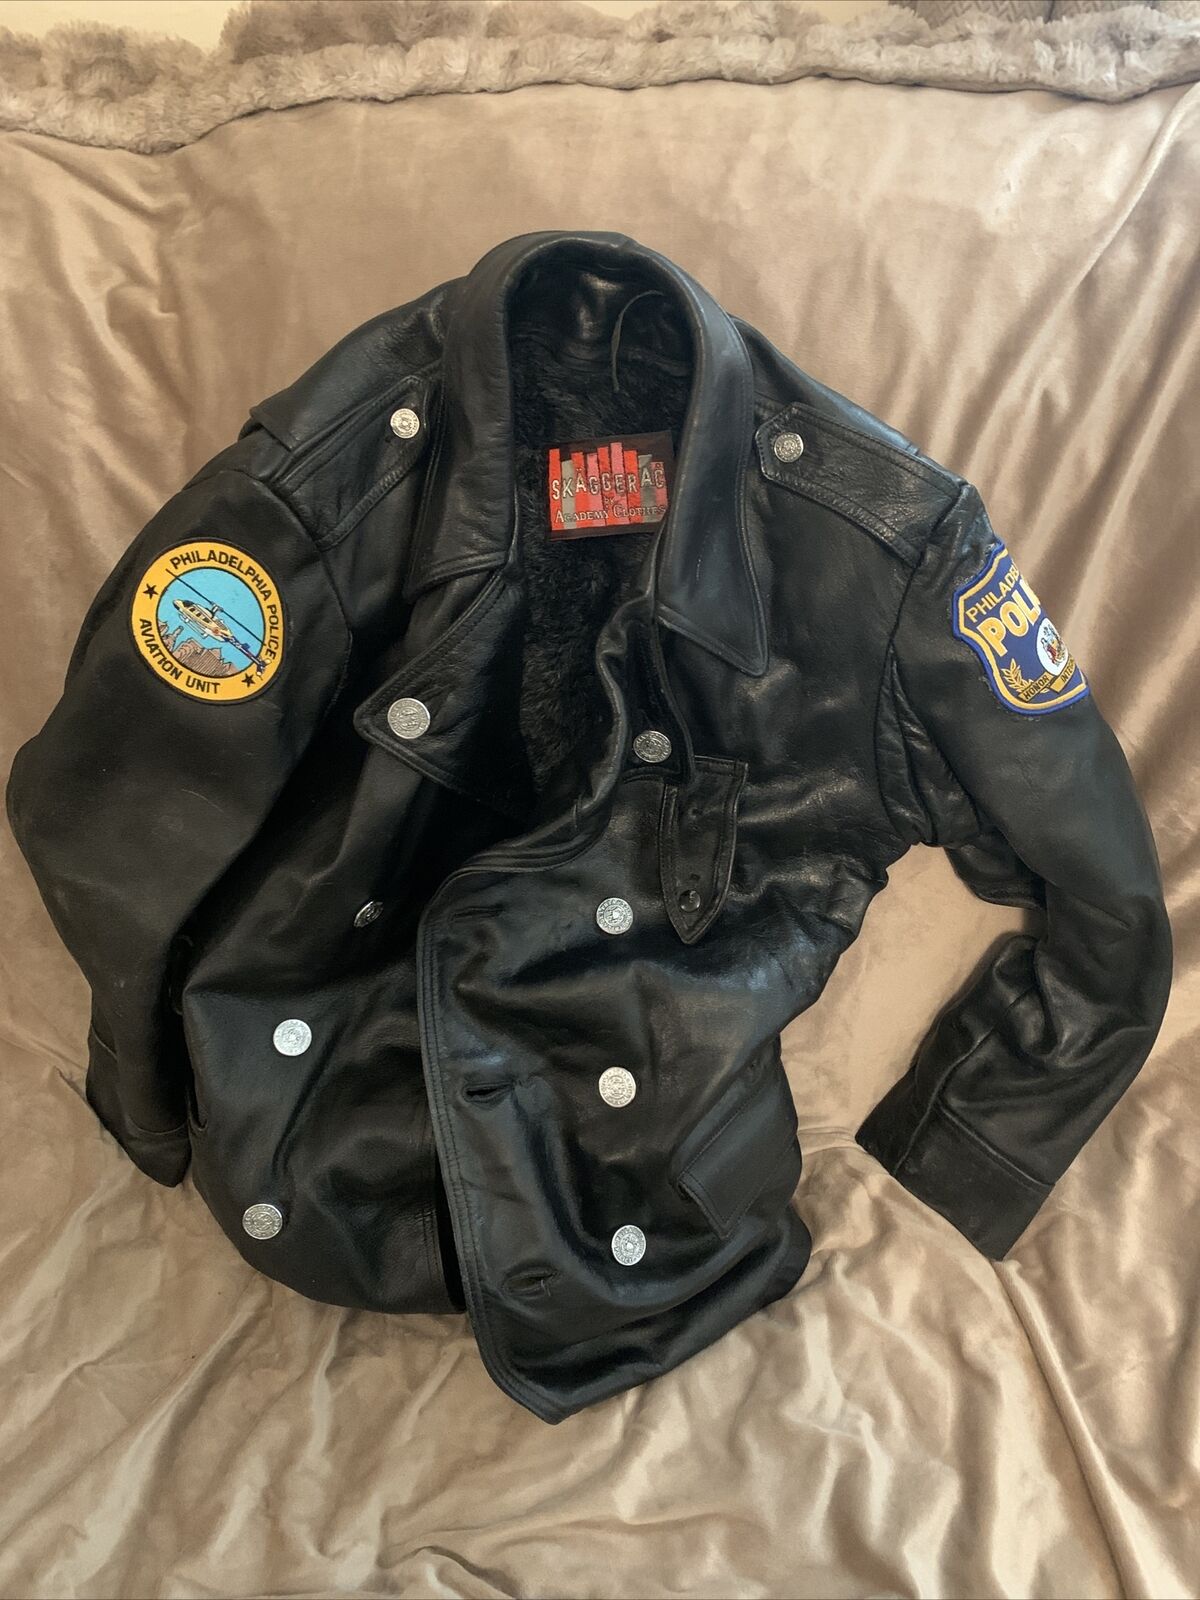 Vintage Philadelphia Police Leather Jacket Aviation Unit Uniform SKAGGERAC